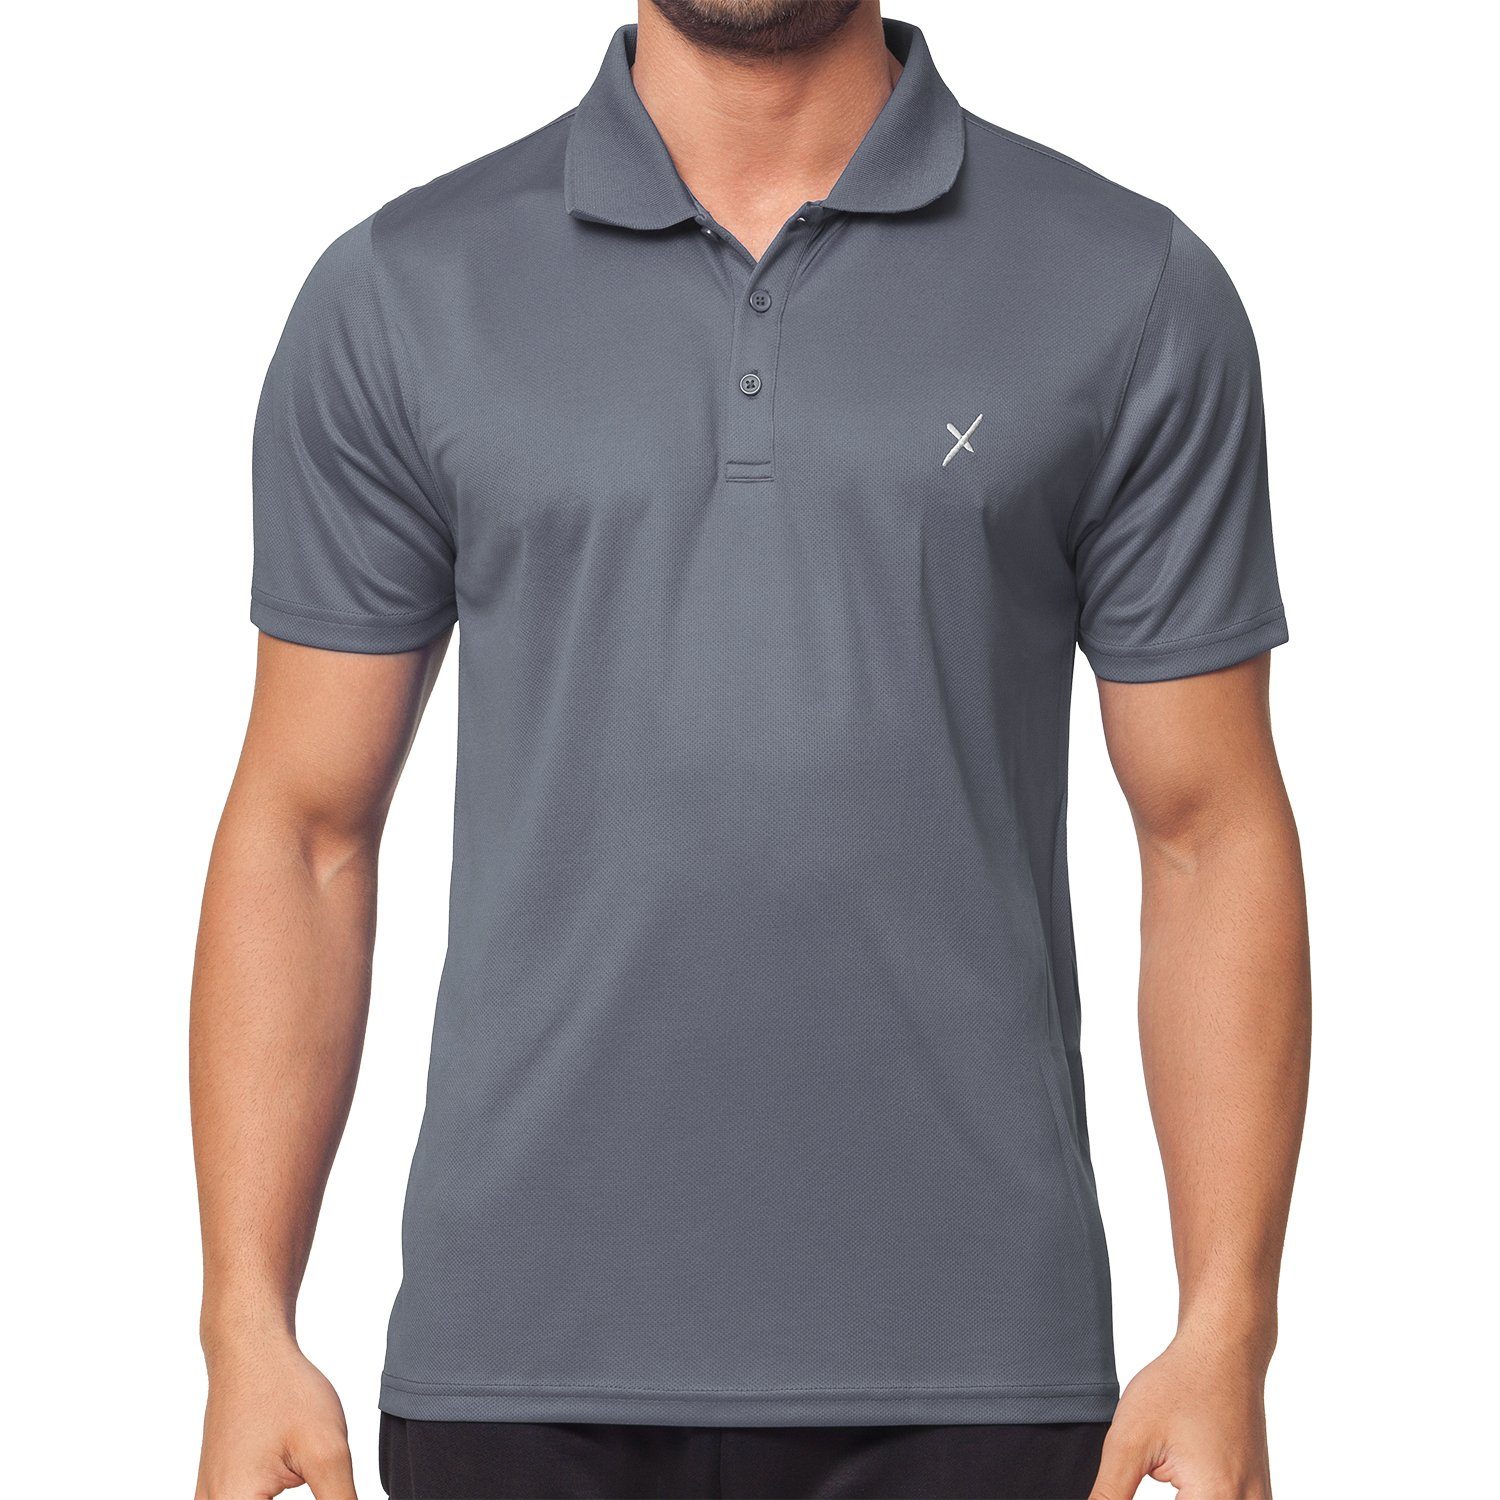 CFLEX Trainingsshirt Herren Sport Shirt Fitness Polo-Shirt Sportswear Collection Grau